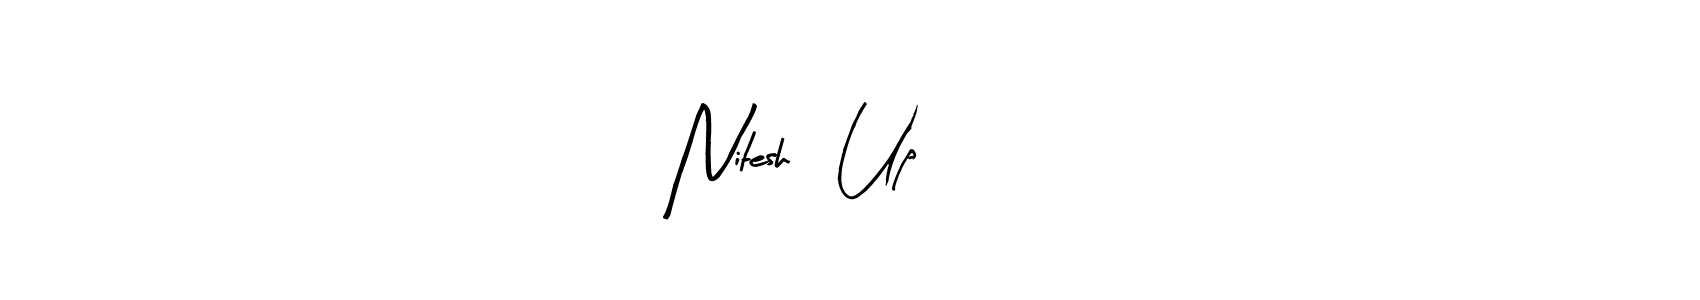 Nitesh   Up    50 stylish signature style. Best Handwritten Sign (Arty Signature) for my name. Handwritten Signature Collection Ideas for my name Nitesh   Up    50. Nitesh   Up    50 signature style 8 images and pictures png